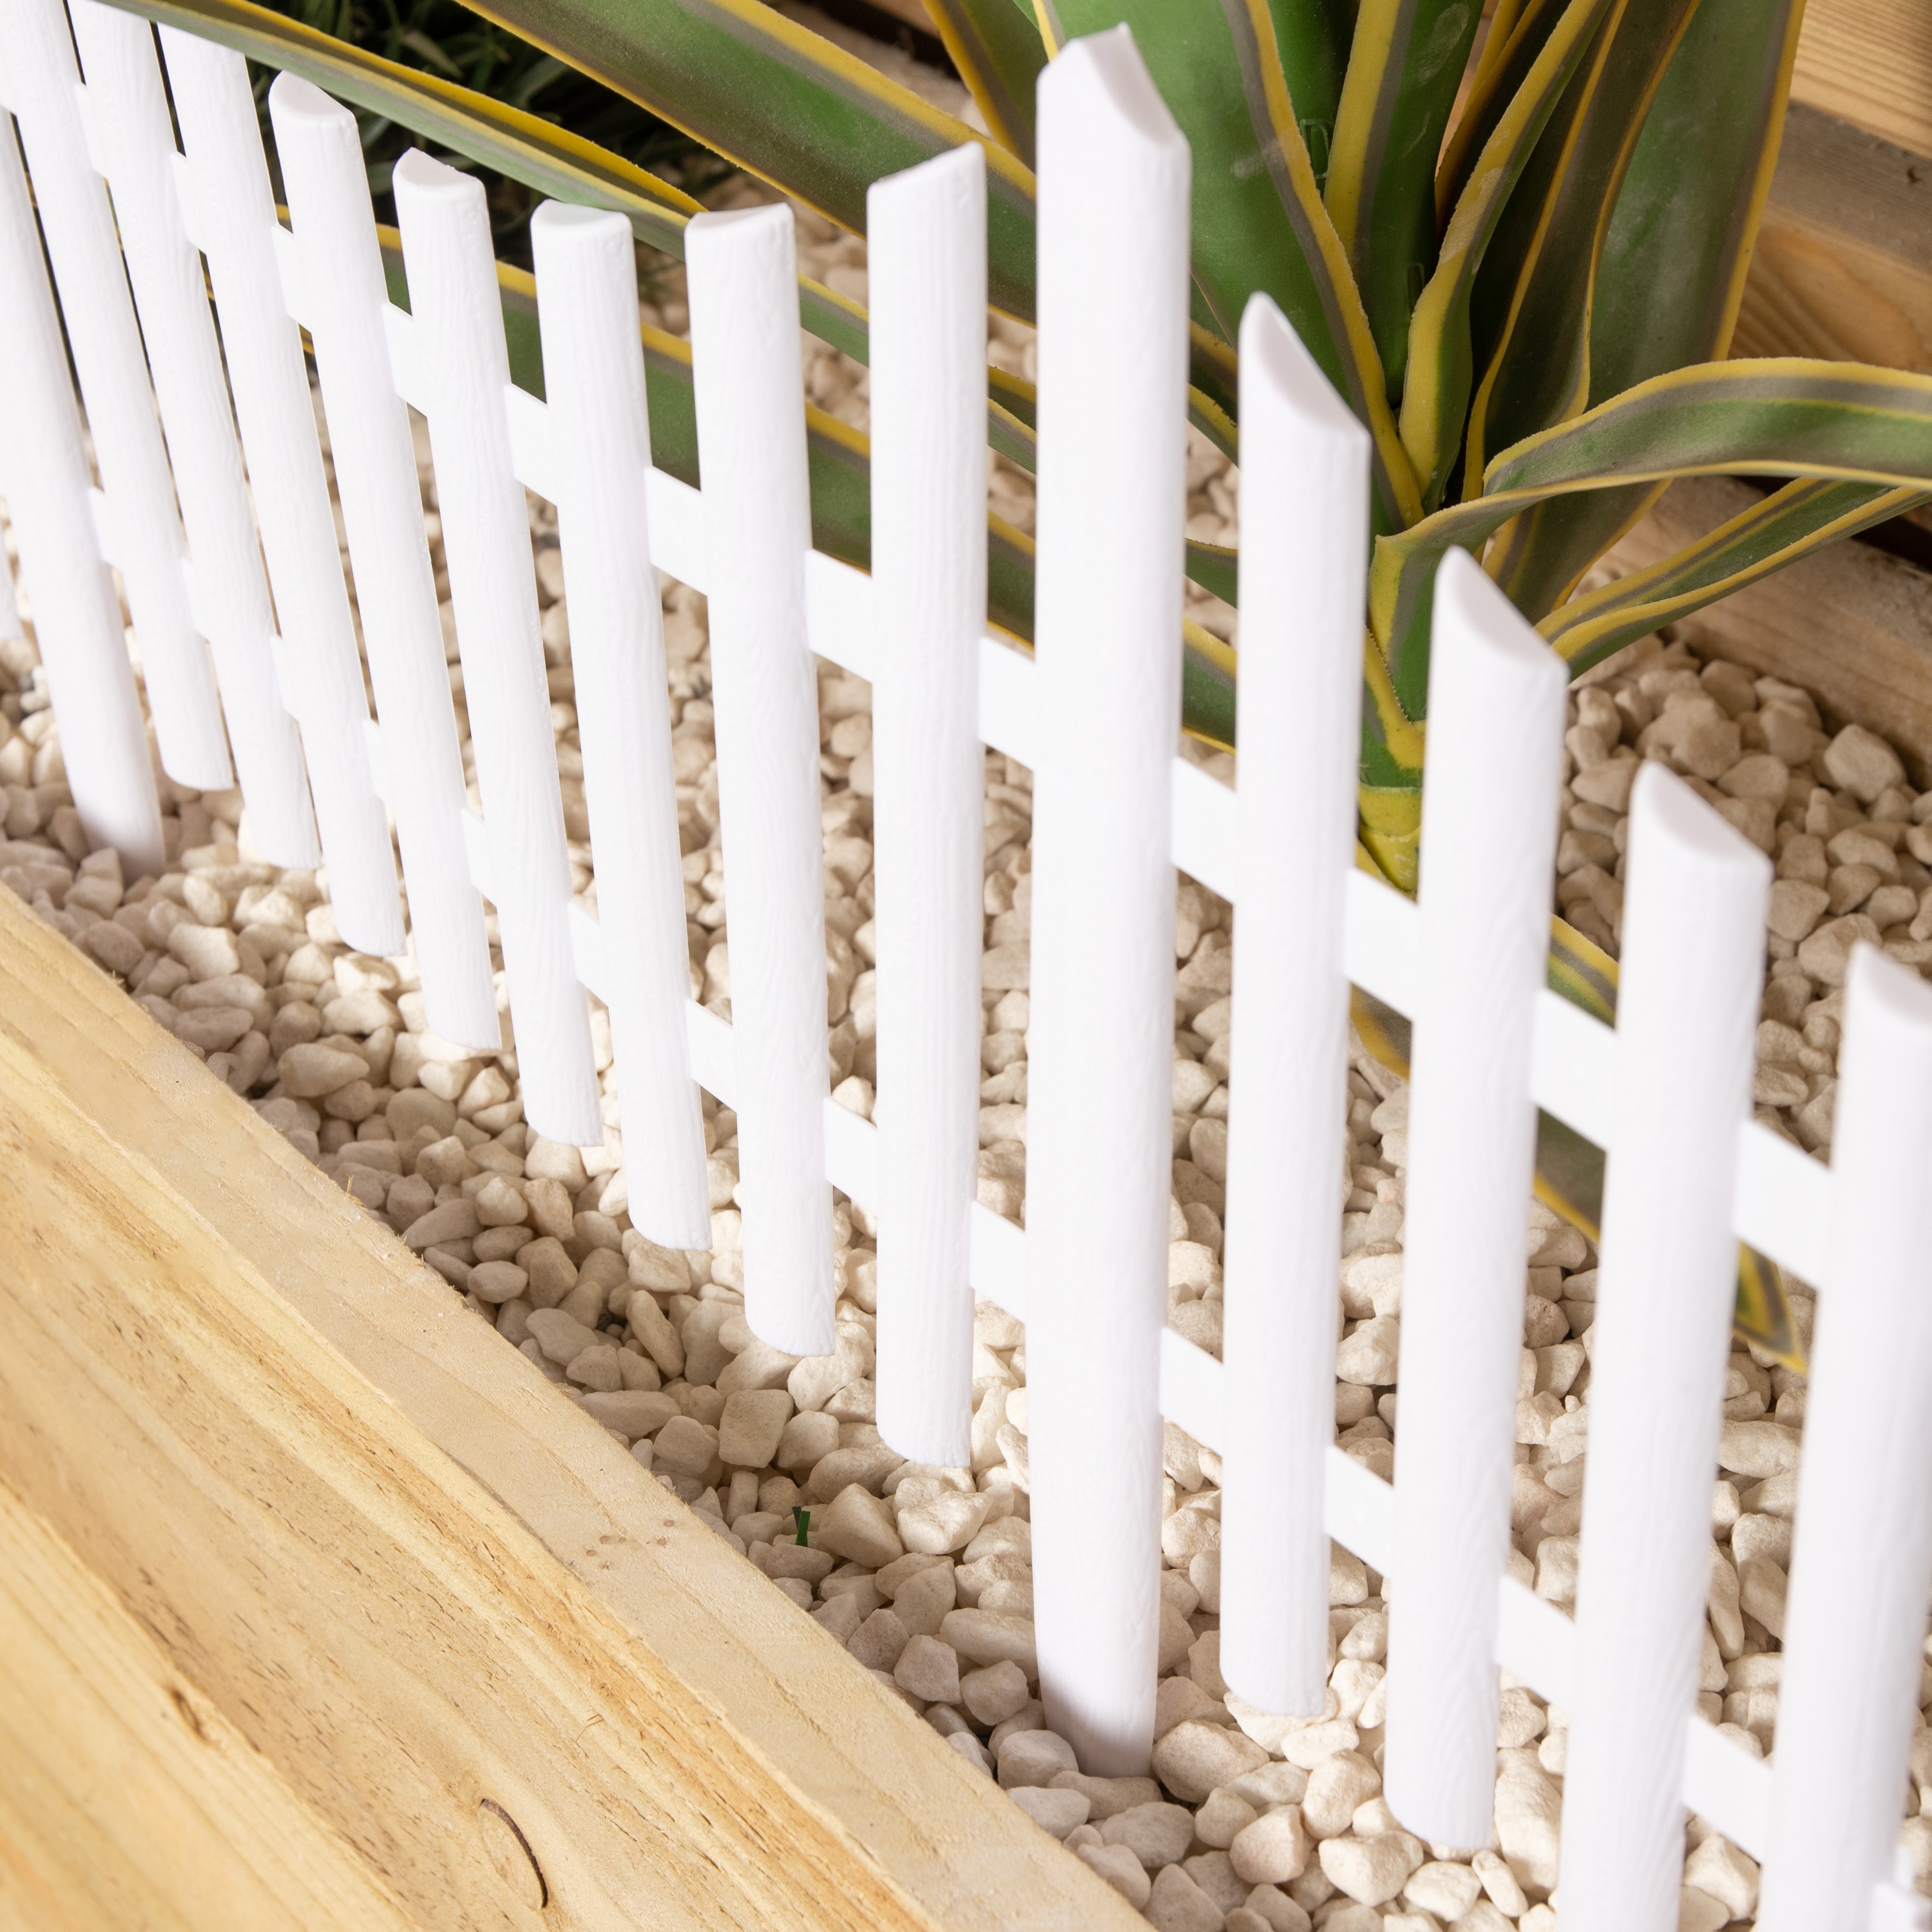 6 x 33cm 4 Piece Set White Wood Effect Picket Fence Garden Edging 